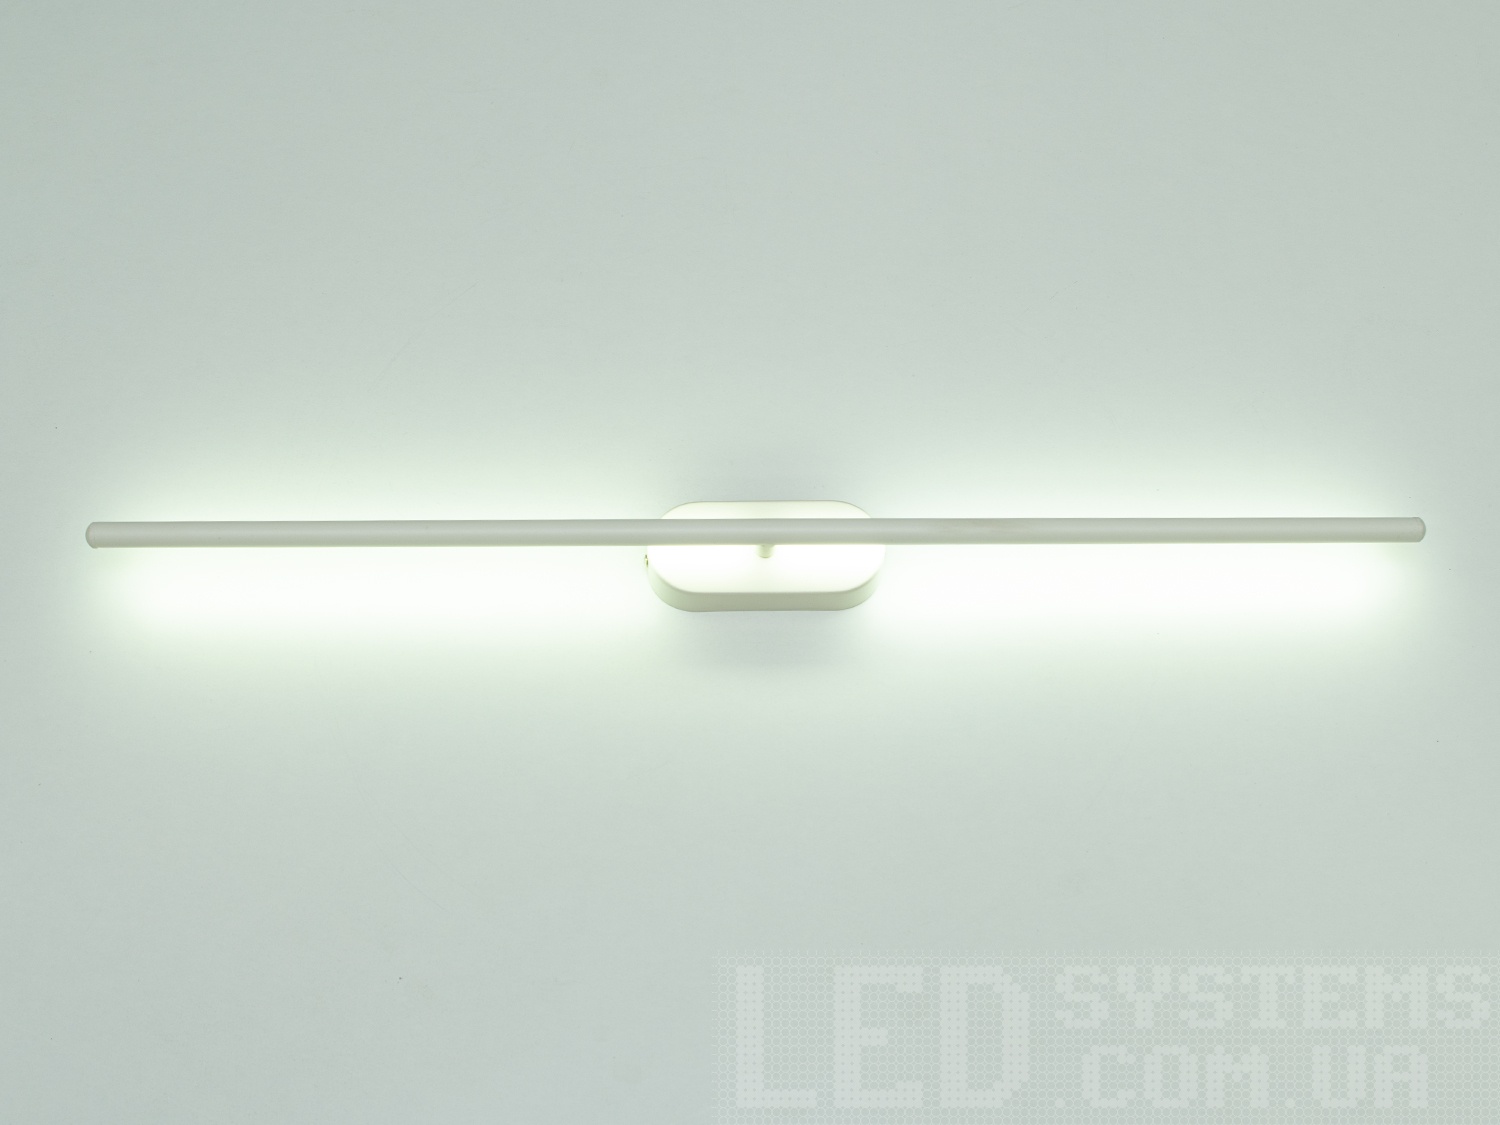 Мінімалістичний лінійний LED настінний LED світильник призначений для використання на стіні. Настінний світлодіодний світильник має кілька режимів: холодний 6400К, нейтральний 4500К, теплий 2700К. Настінний світильник не сліпить рахунок матеріалу - силікону, до того ж цей матеріал дуже міцний і гнучкий - його важко пошкодити. Завдяки відображенню від поверхні стіни світло виходить м'яким і ненав'язливим. Застосовуються для створення приємного освітлення, що заповнює. Застосовується в квартири (кухні, спальні, коридори ...), ресторани, кафе або закусочні. Ви і ваші гості завжди будуть у захваті від світла наших LED-світильників. Кріпиться до стіни, до гіпсокартону або до інших настінних поверхонь.